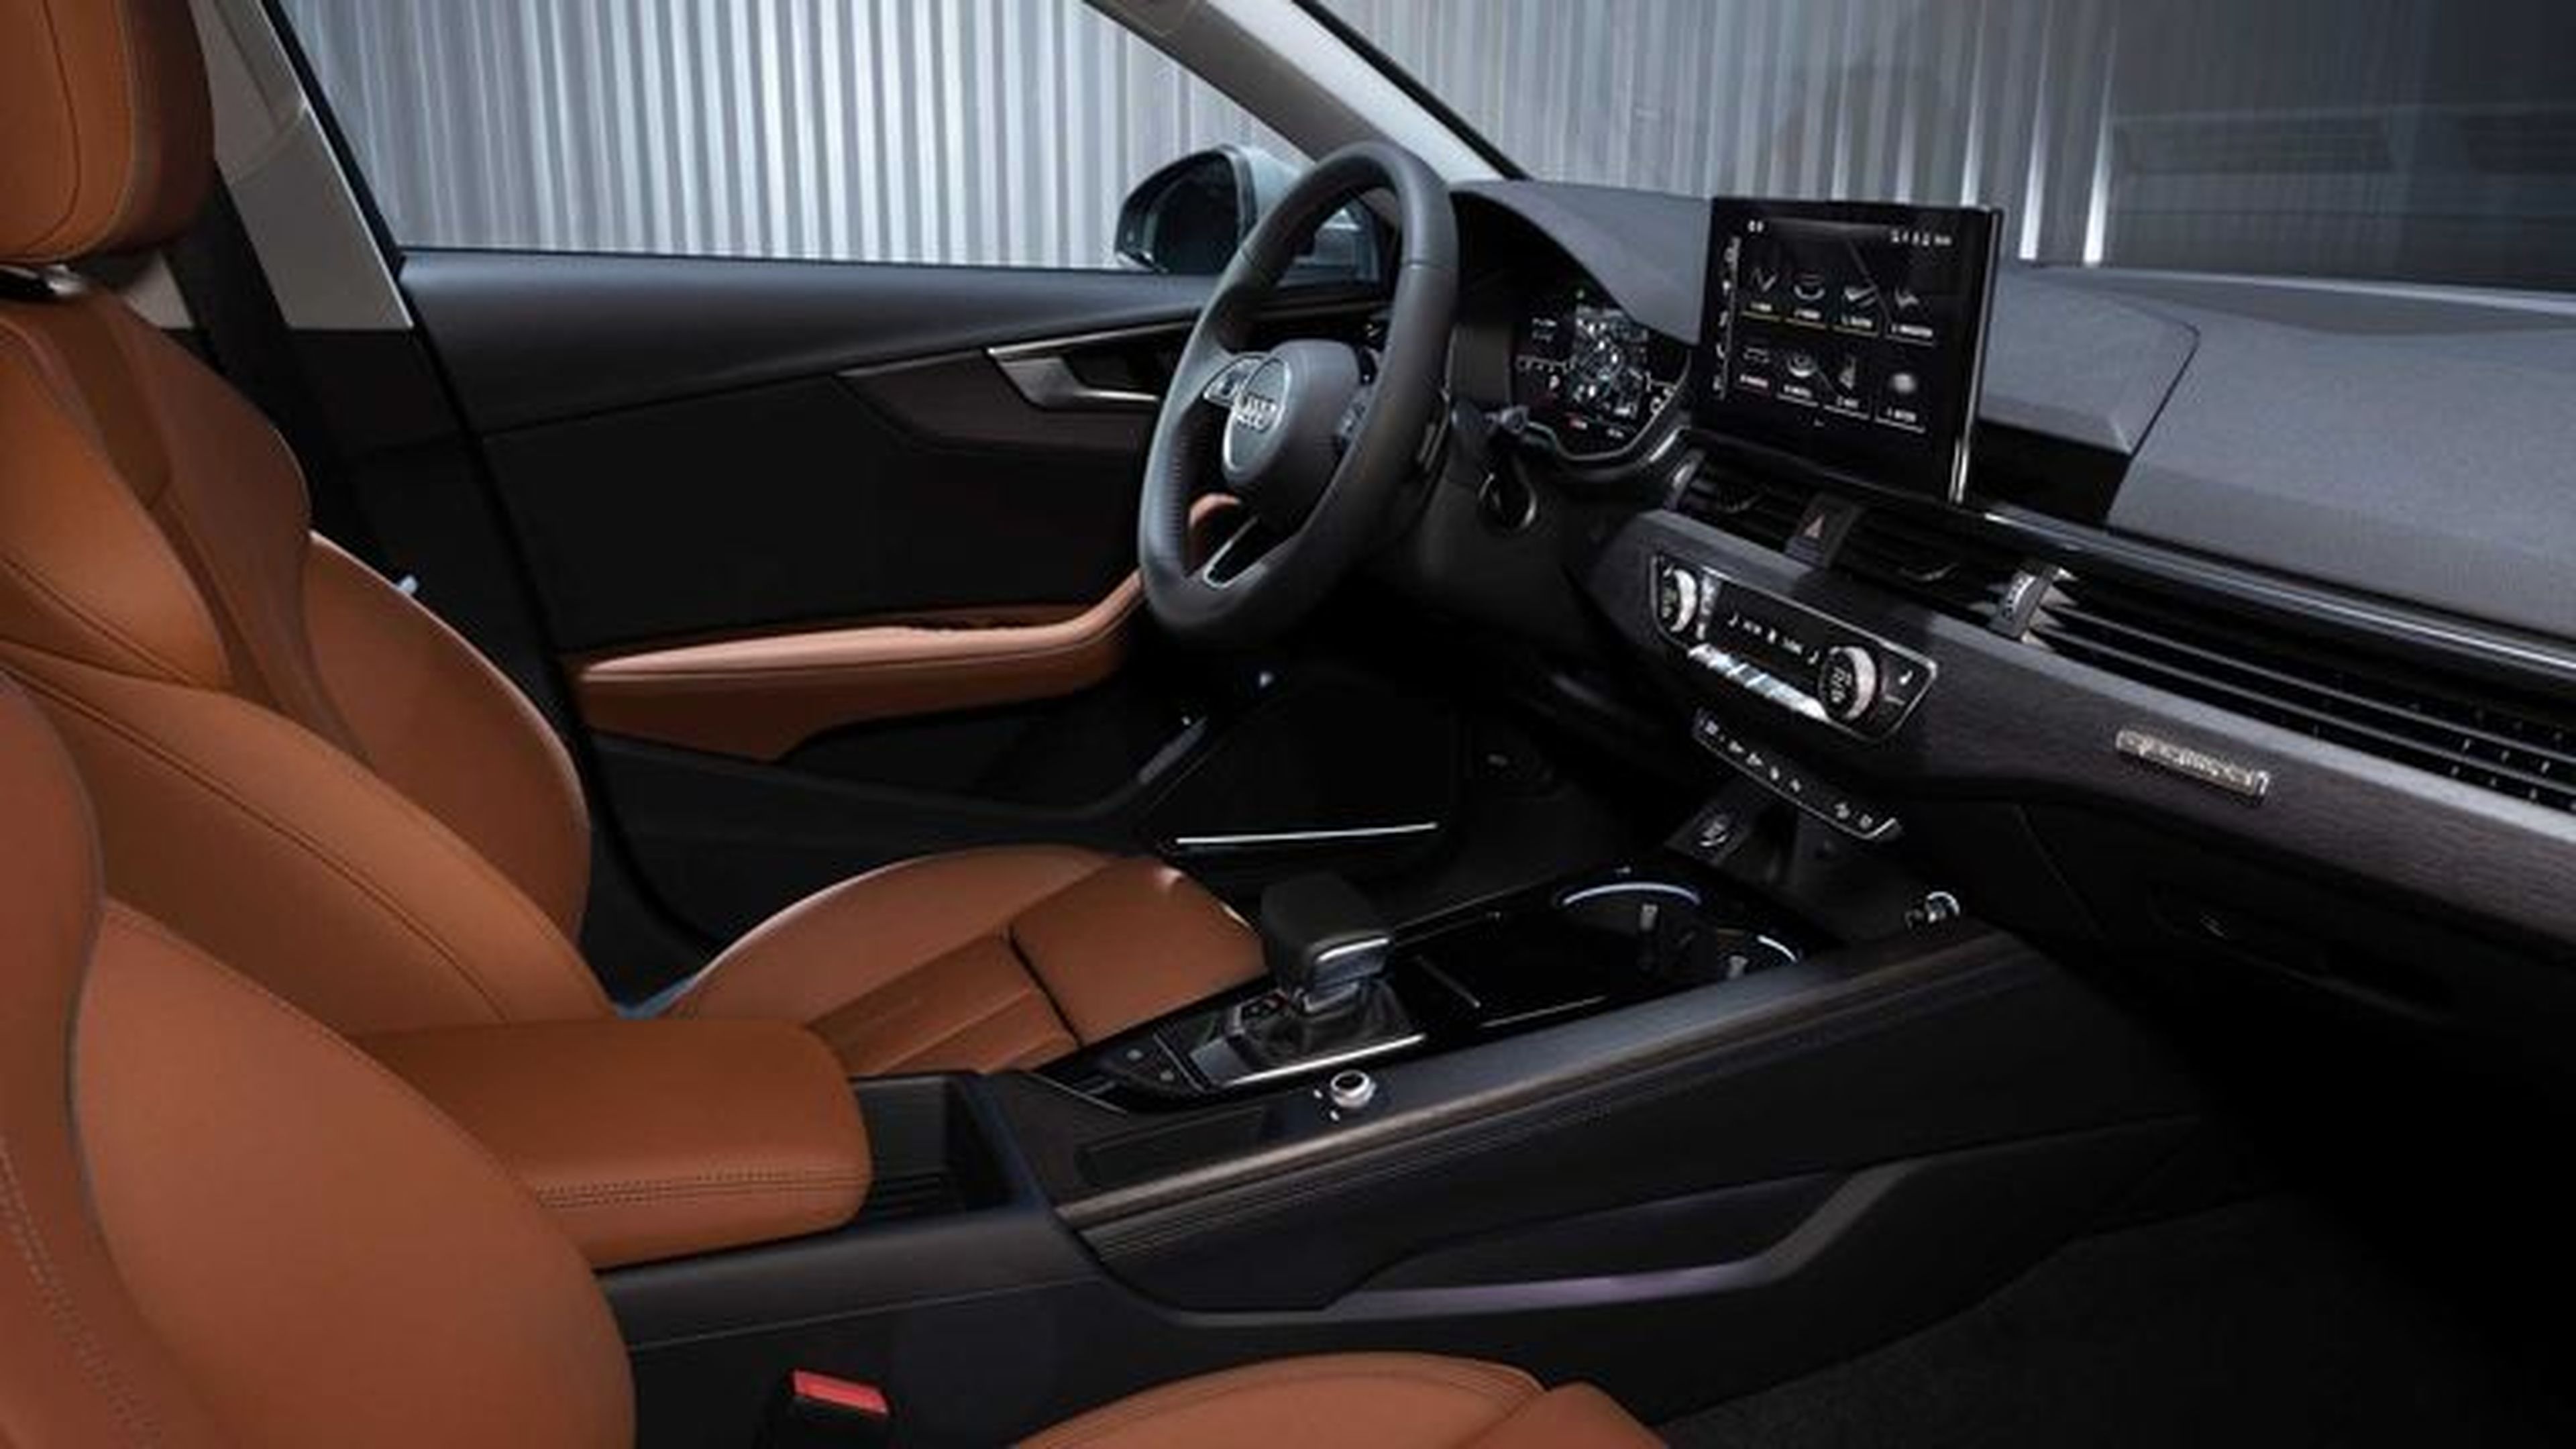 Audi A4 2020 virtudes y defectos